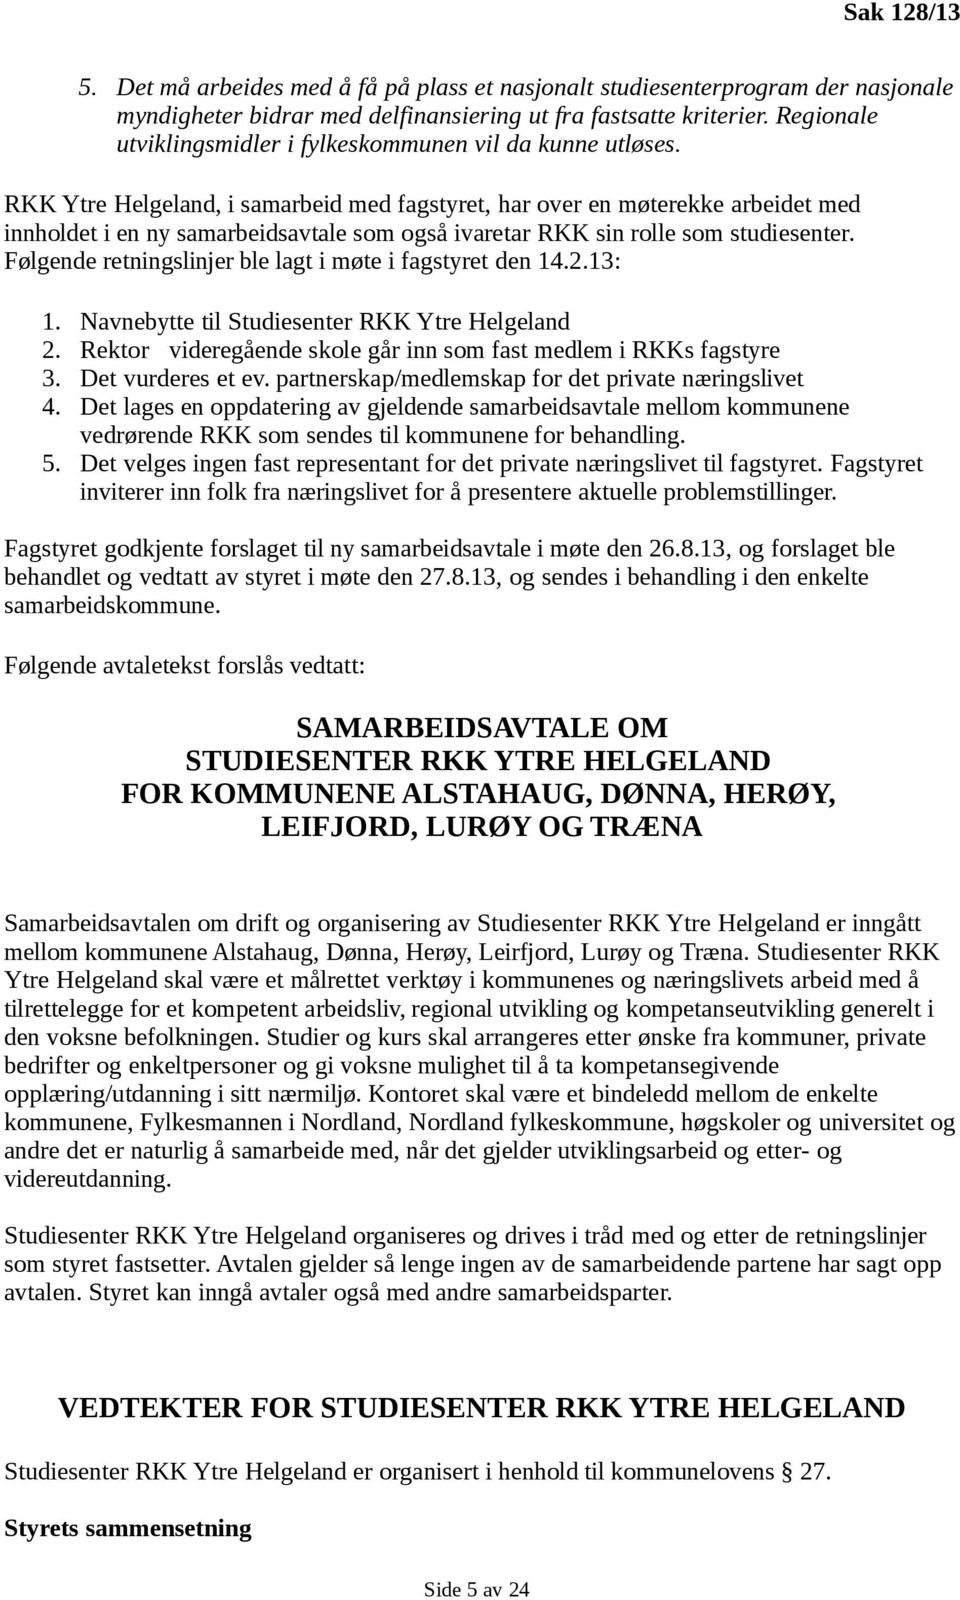 RKK Ytre Helgeland, i samarbeid med fagstyret, har over en møterekke arbeidet med innholdet i en ny samarbeidsavtale som også ivaretar RKK sin rolle som studiesenter.